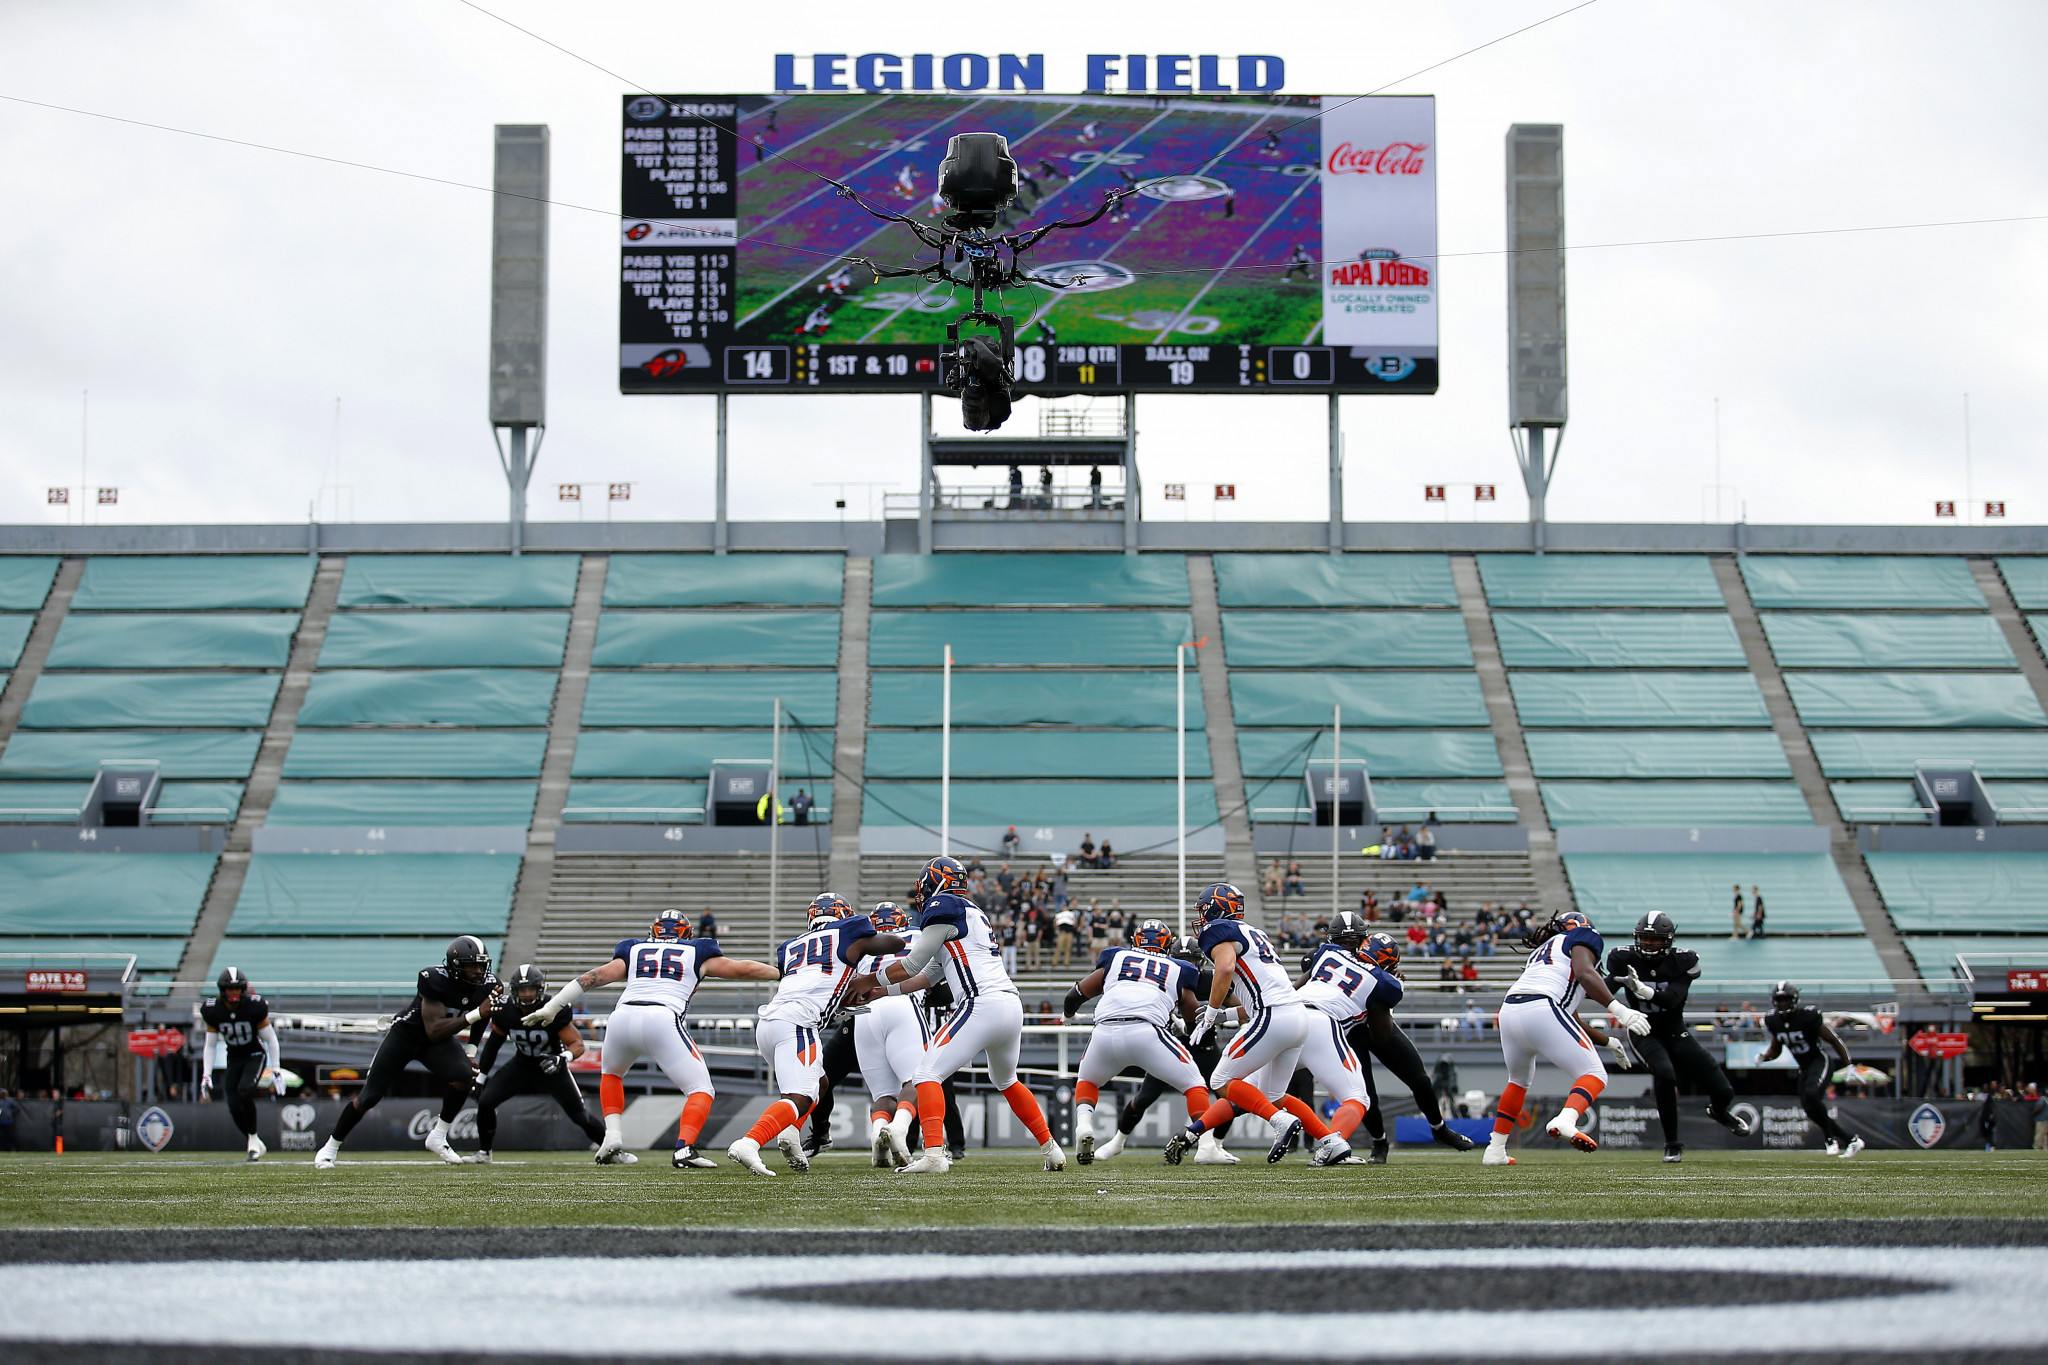 Legion Field doit accueillir le flag-football aux Jeux mondiaux 2022 © Getty Images